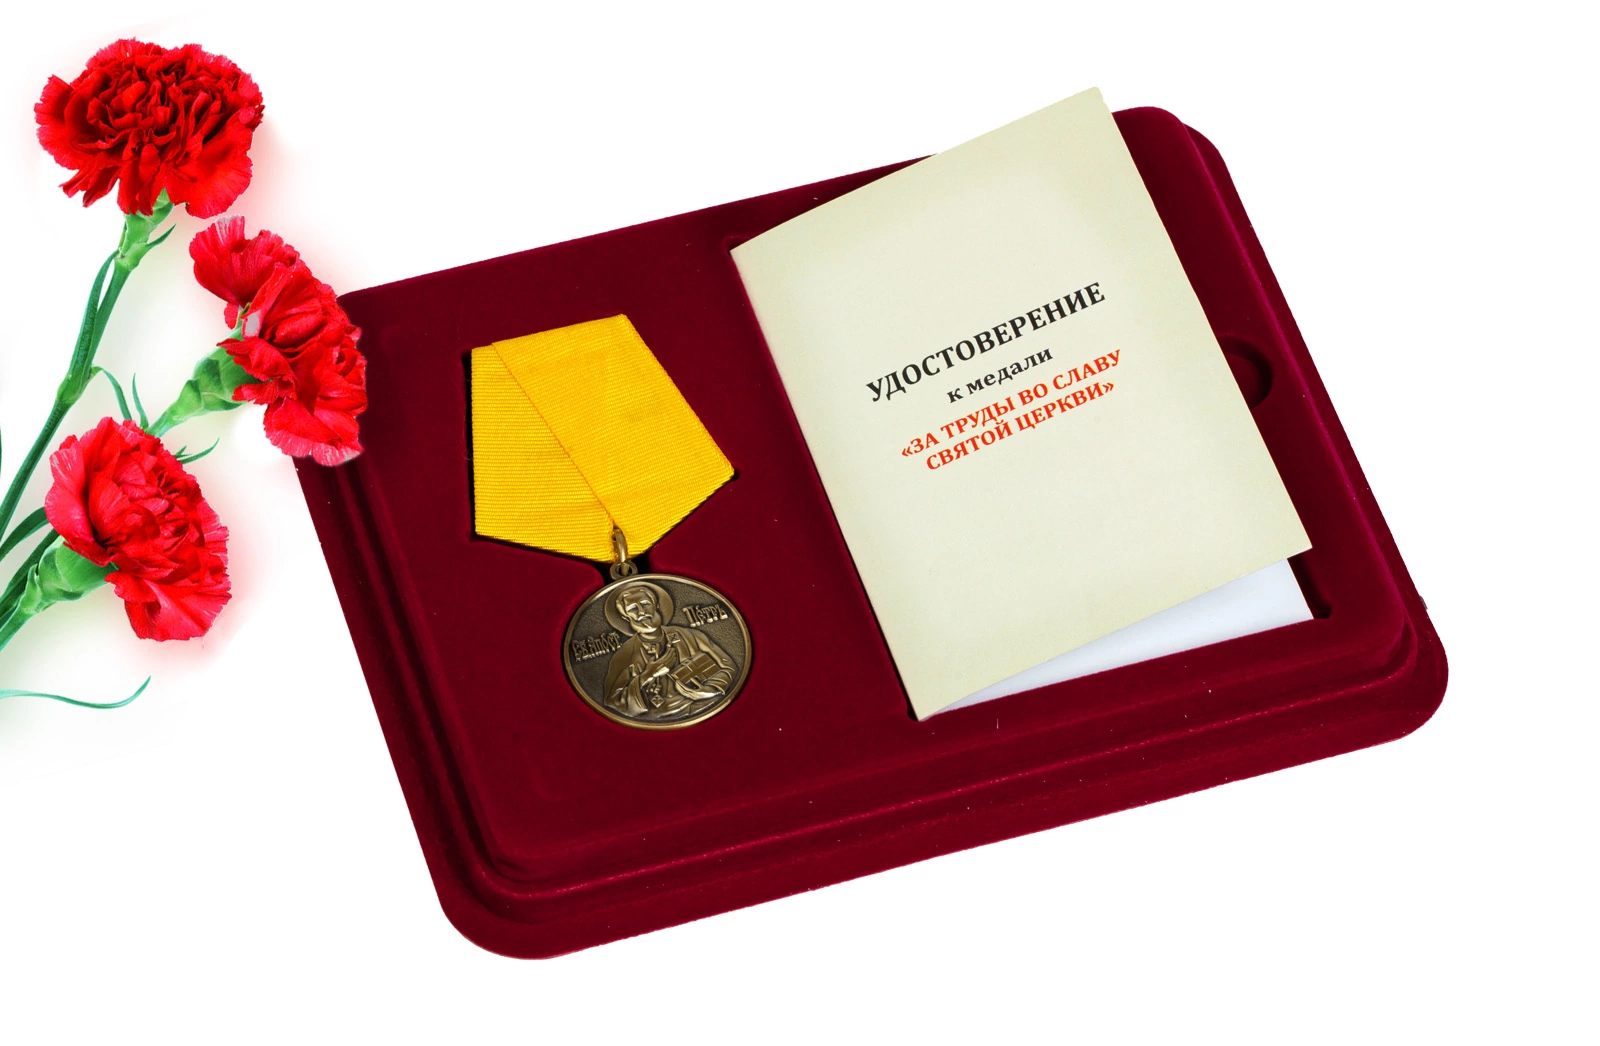 Православная медаль "За труды во славу Святой церкви" в футляре с отделением под удостоверение